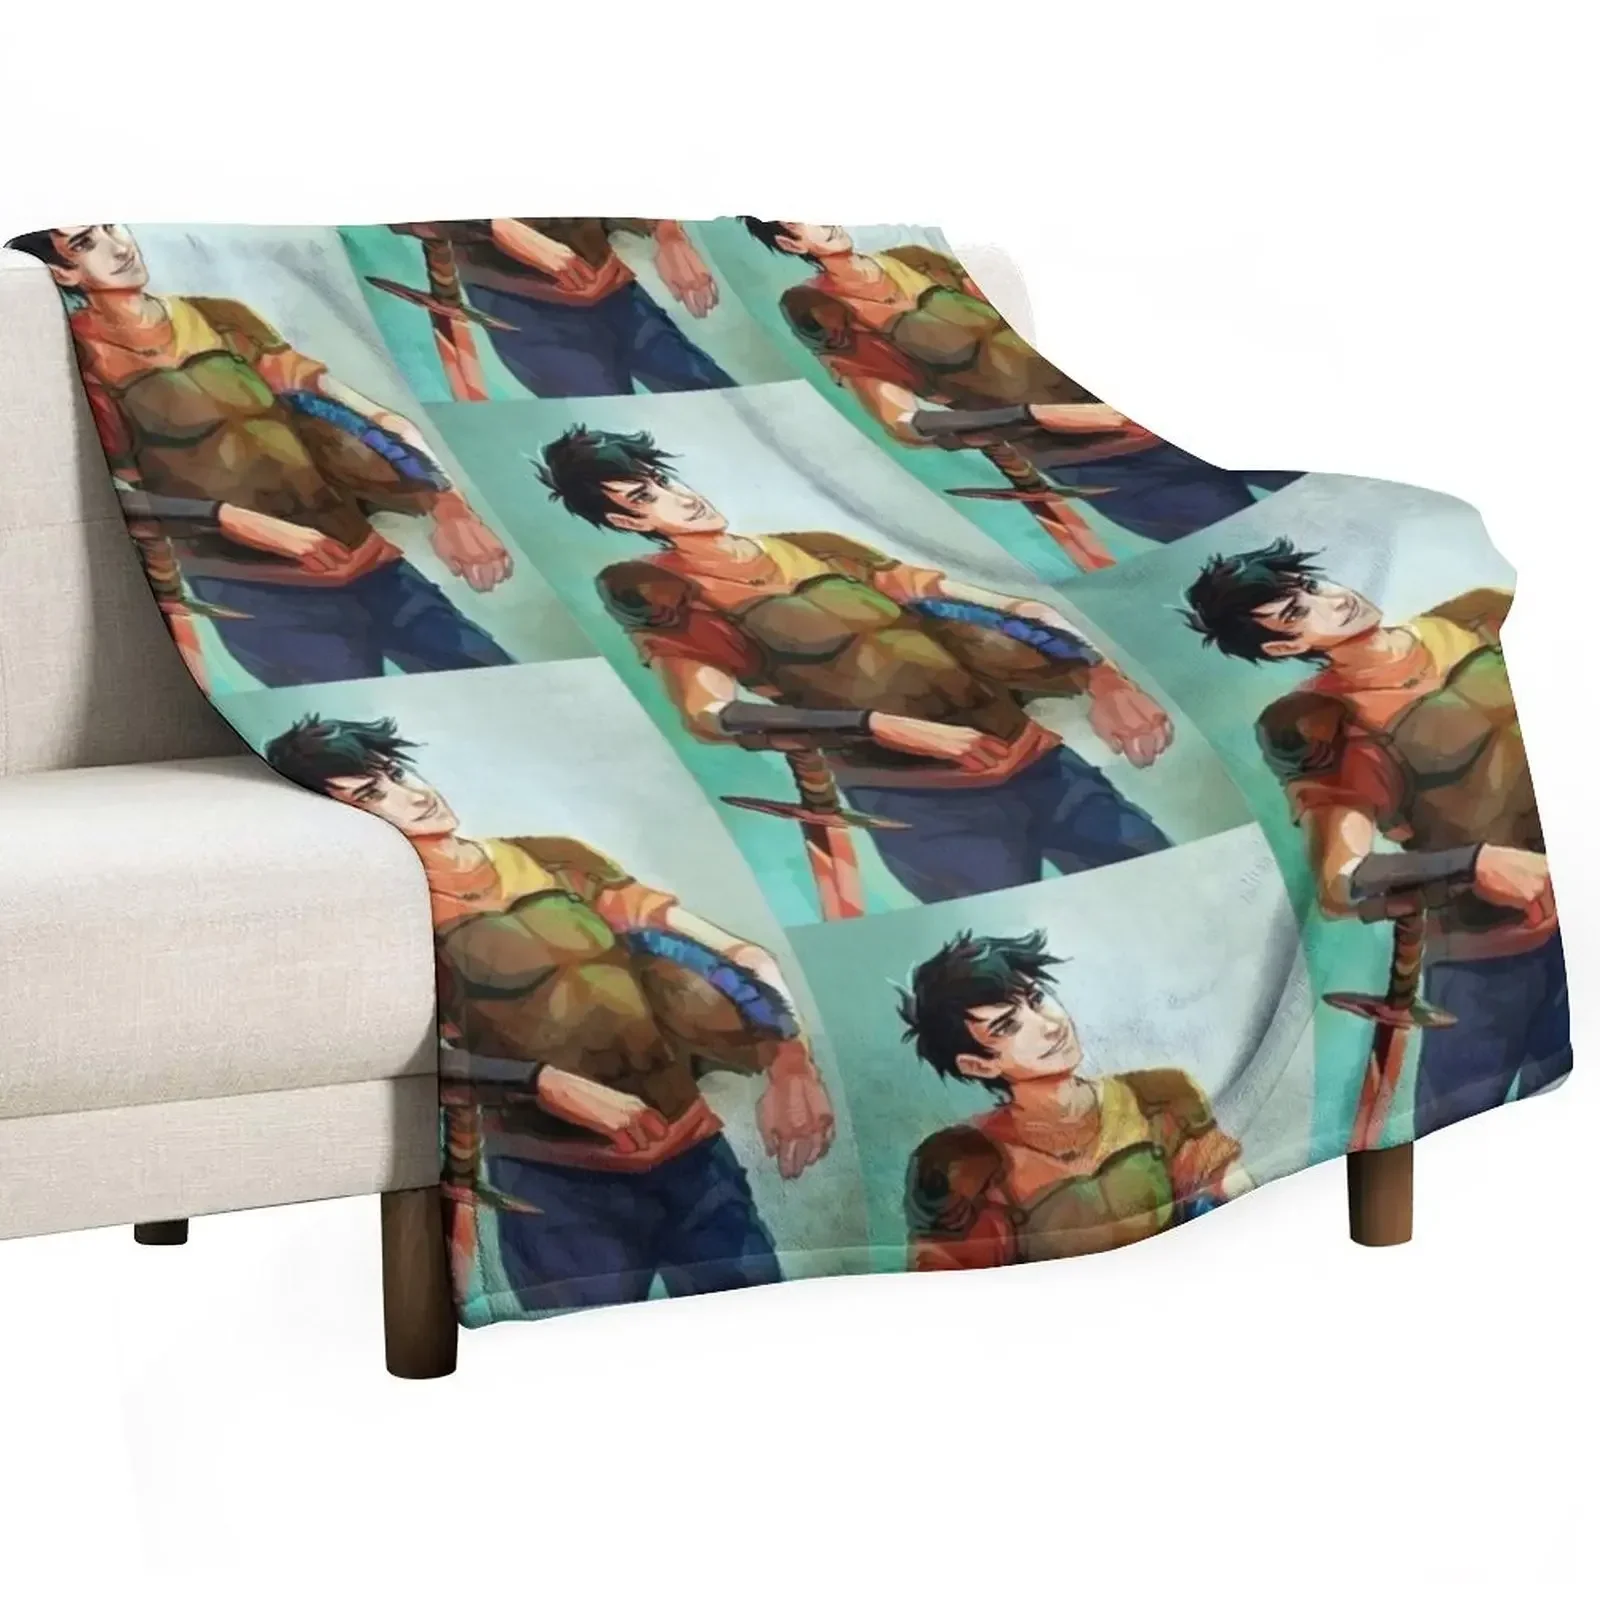 

Одеяло Percy Jackson для диванов, очень большие покрывала